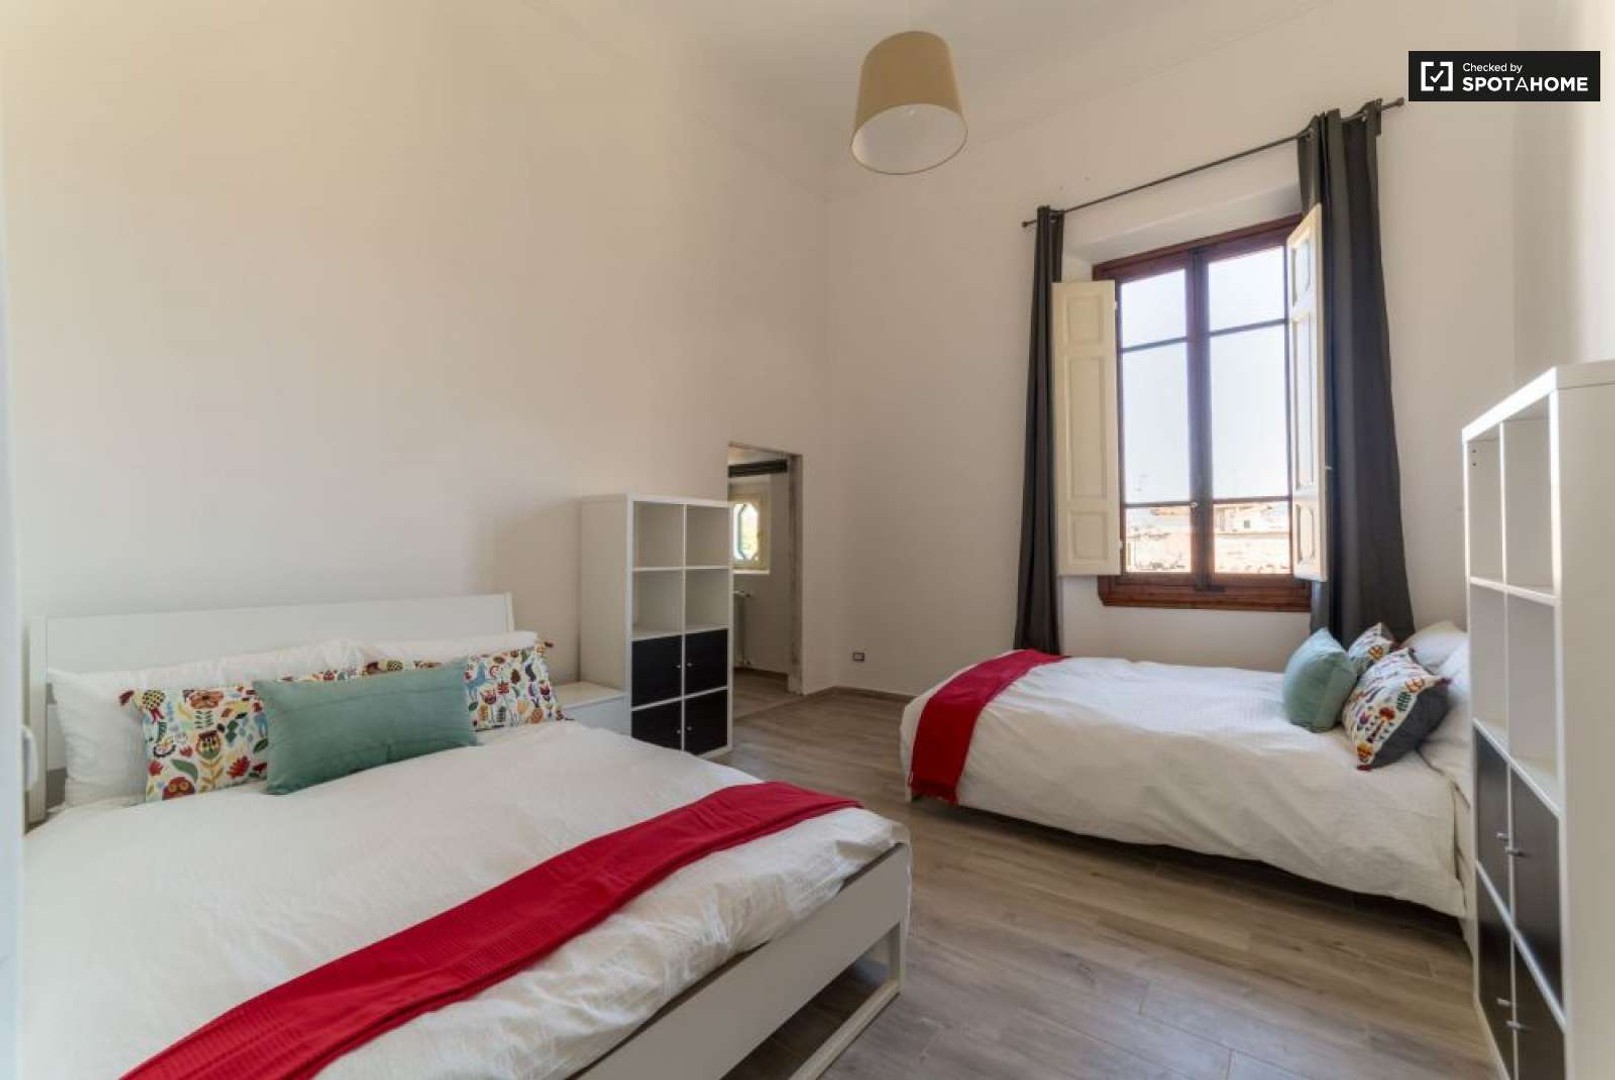 Firenze de çift kişilik yataklı kiralık oda